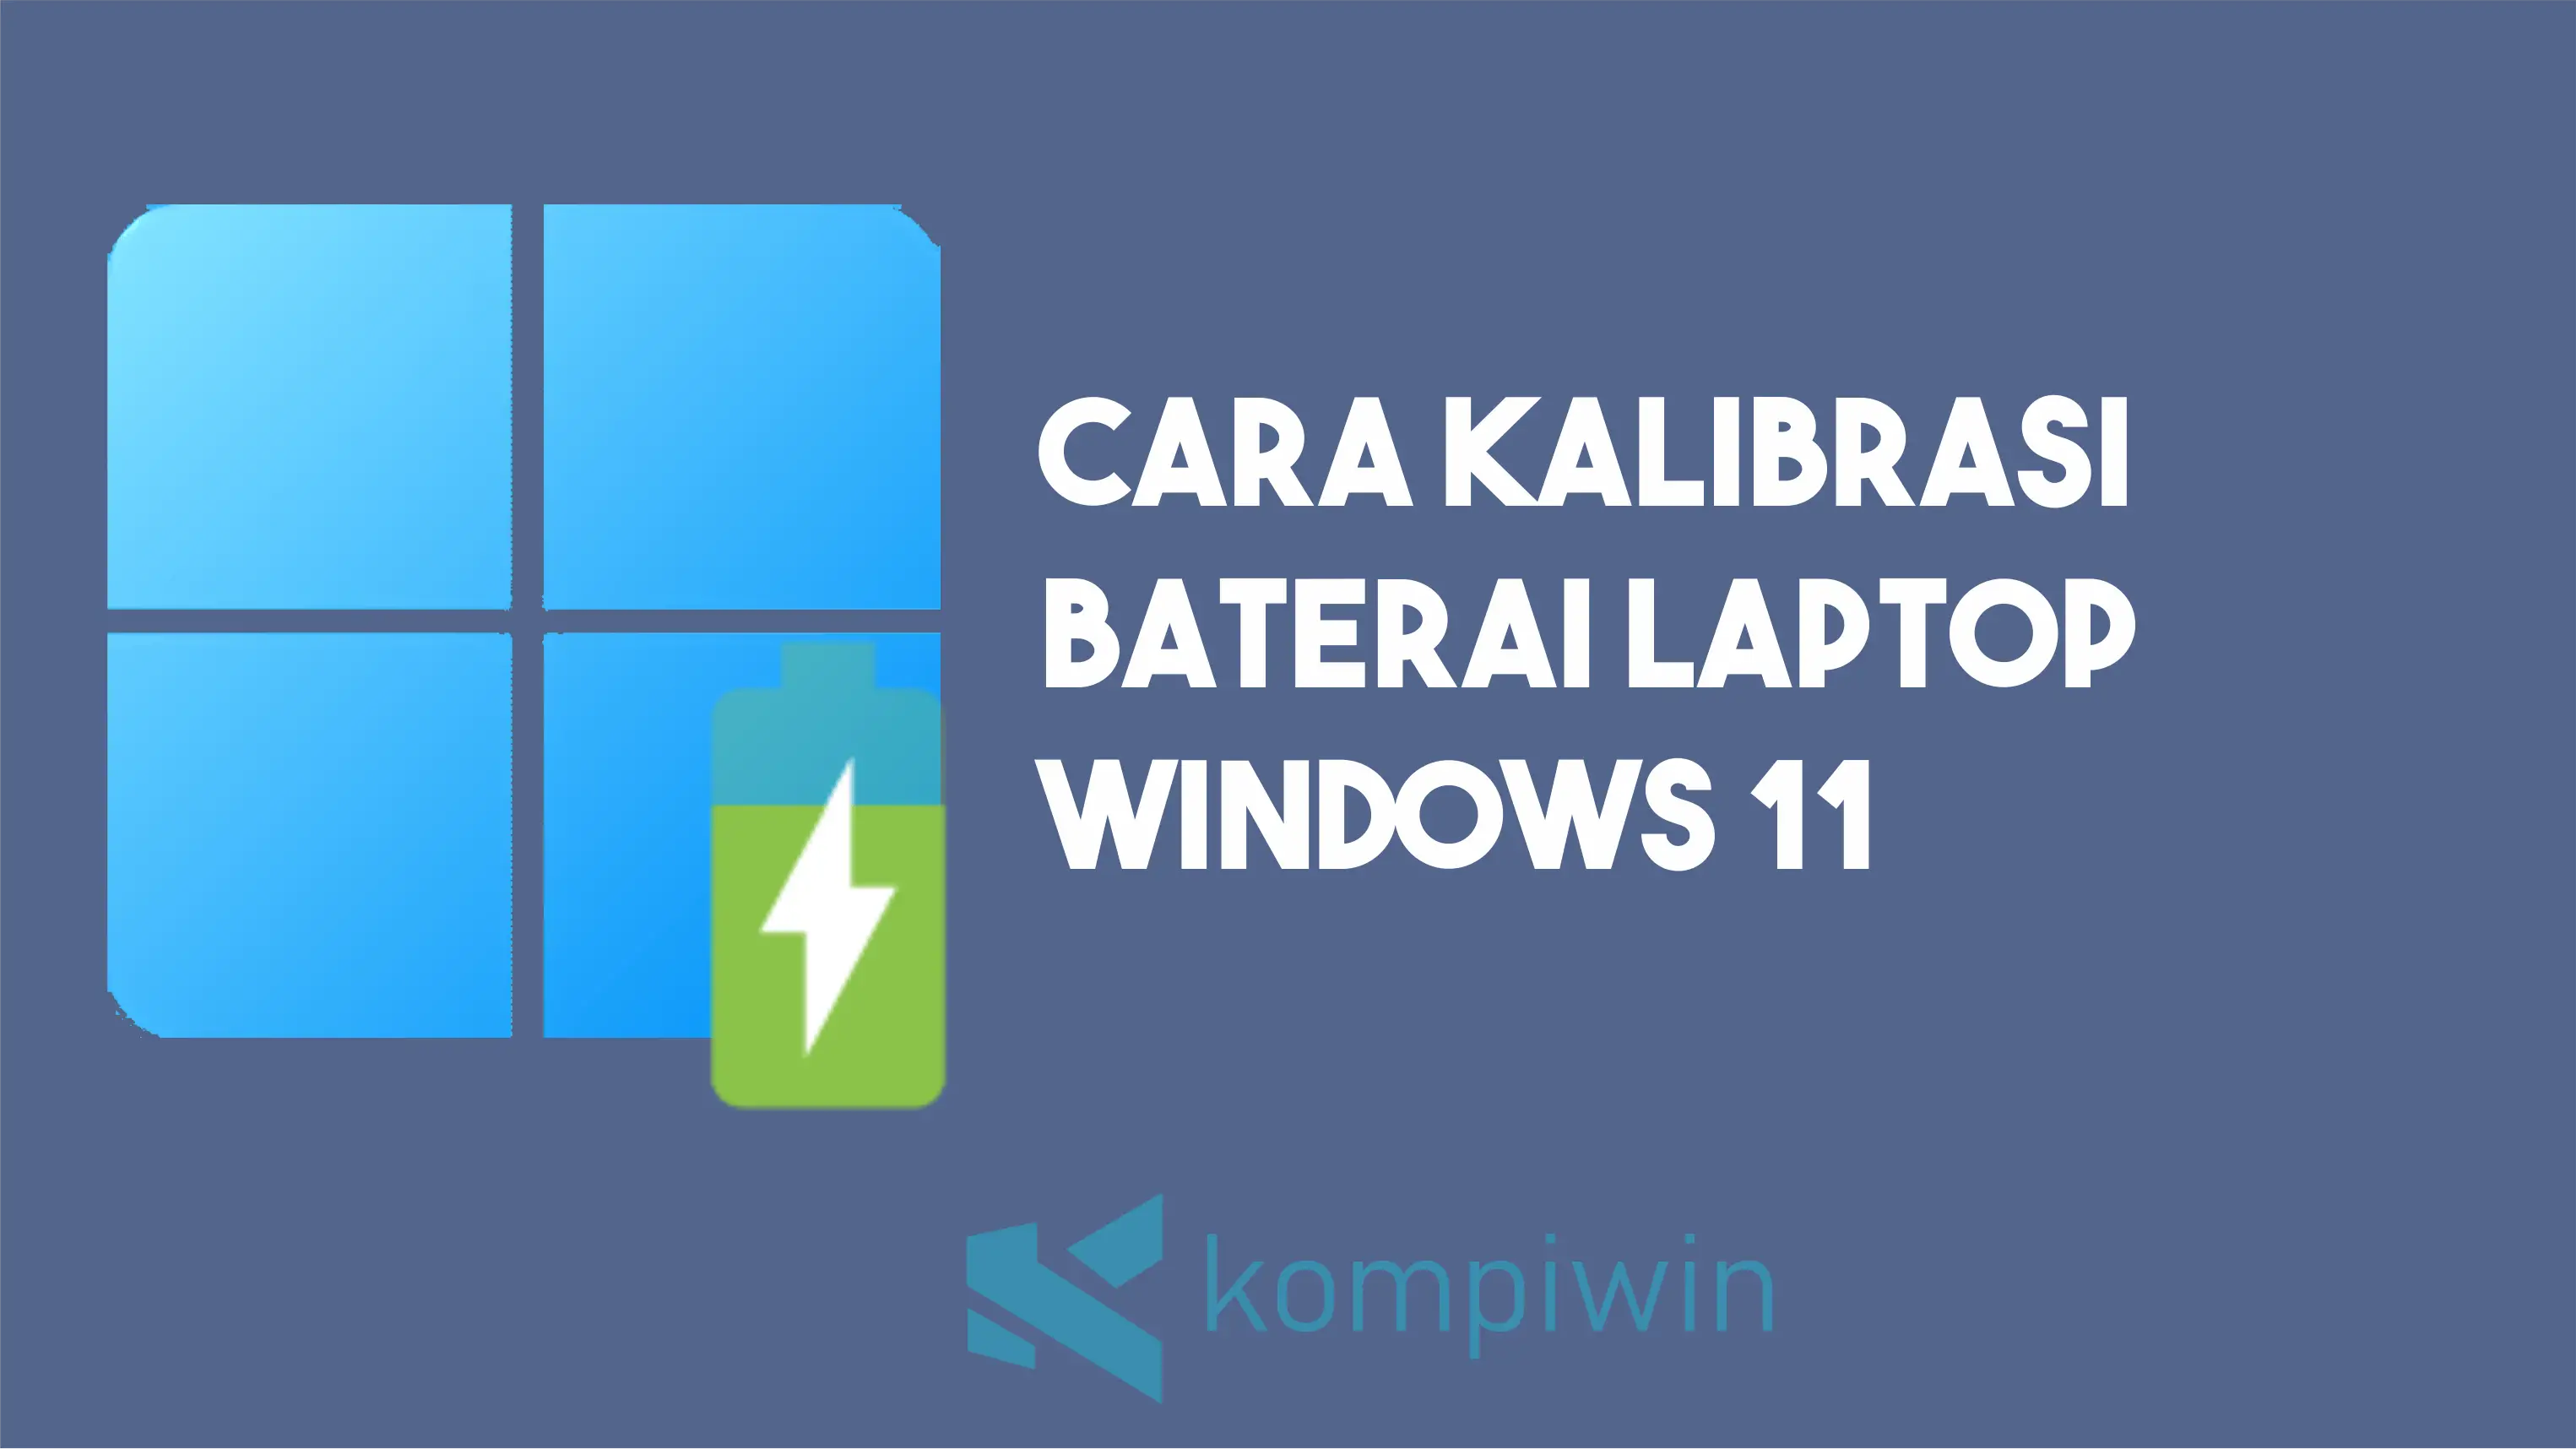 Cara Kalibrasi Baterai Laptop di Windows 11